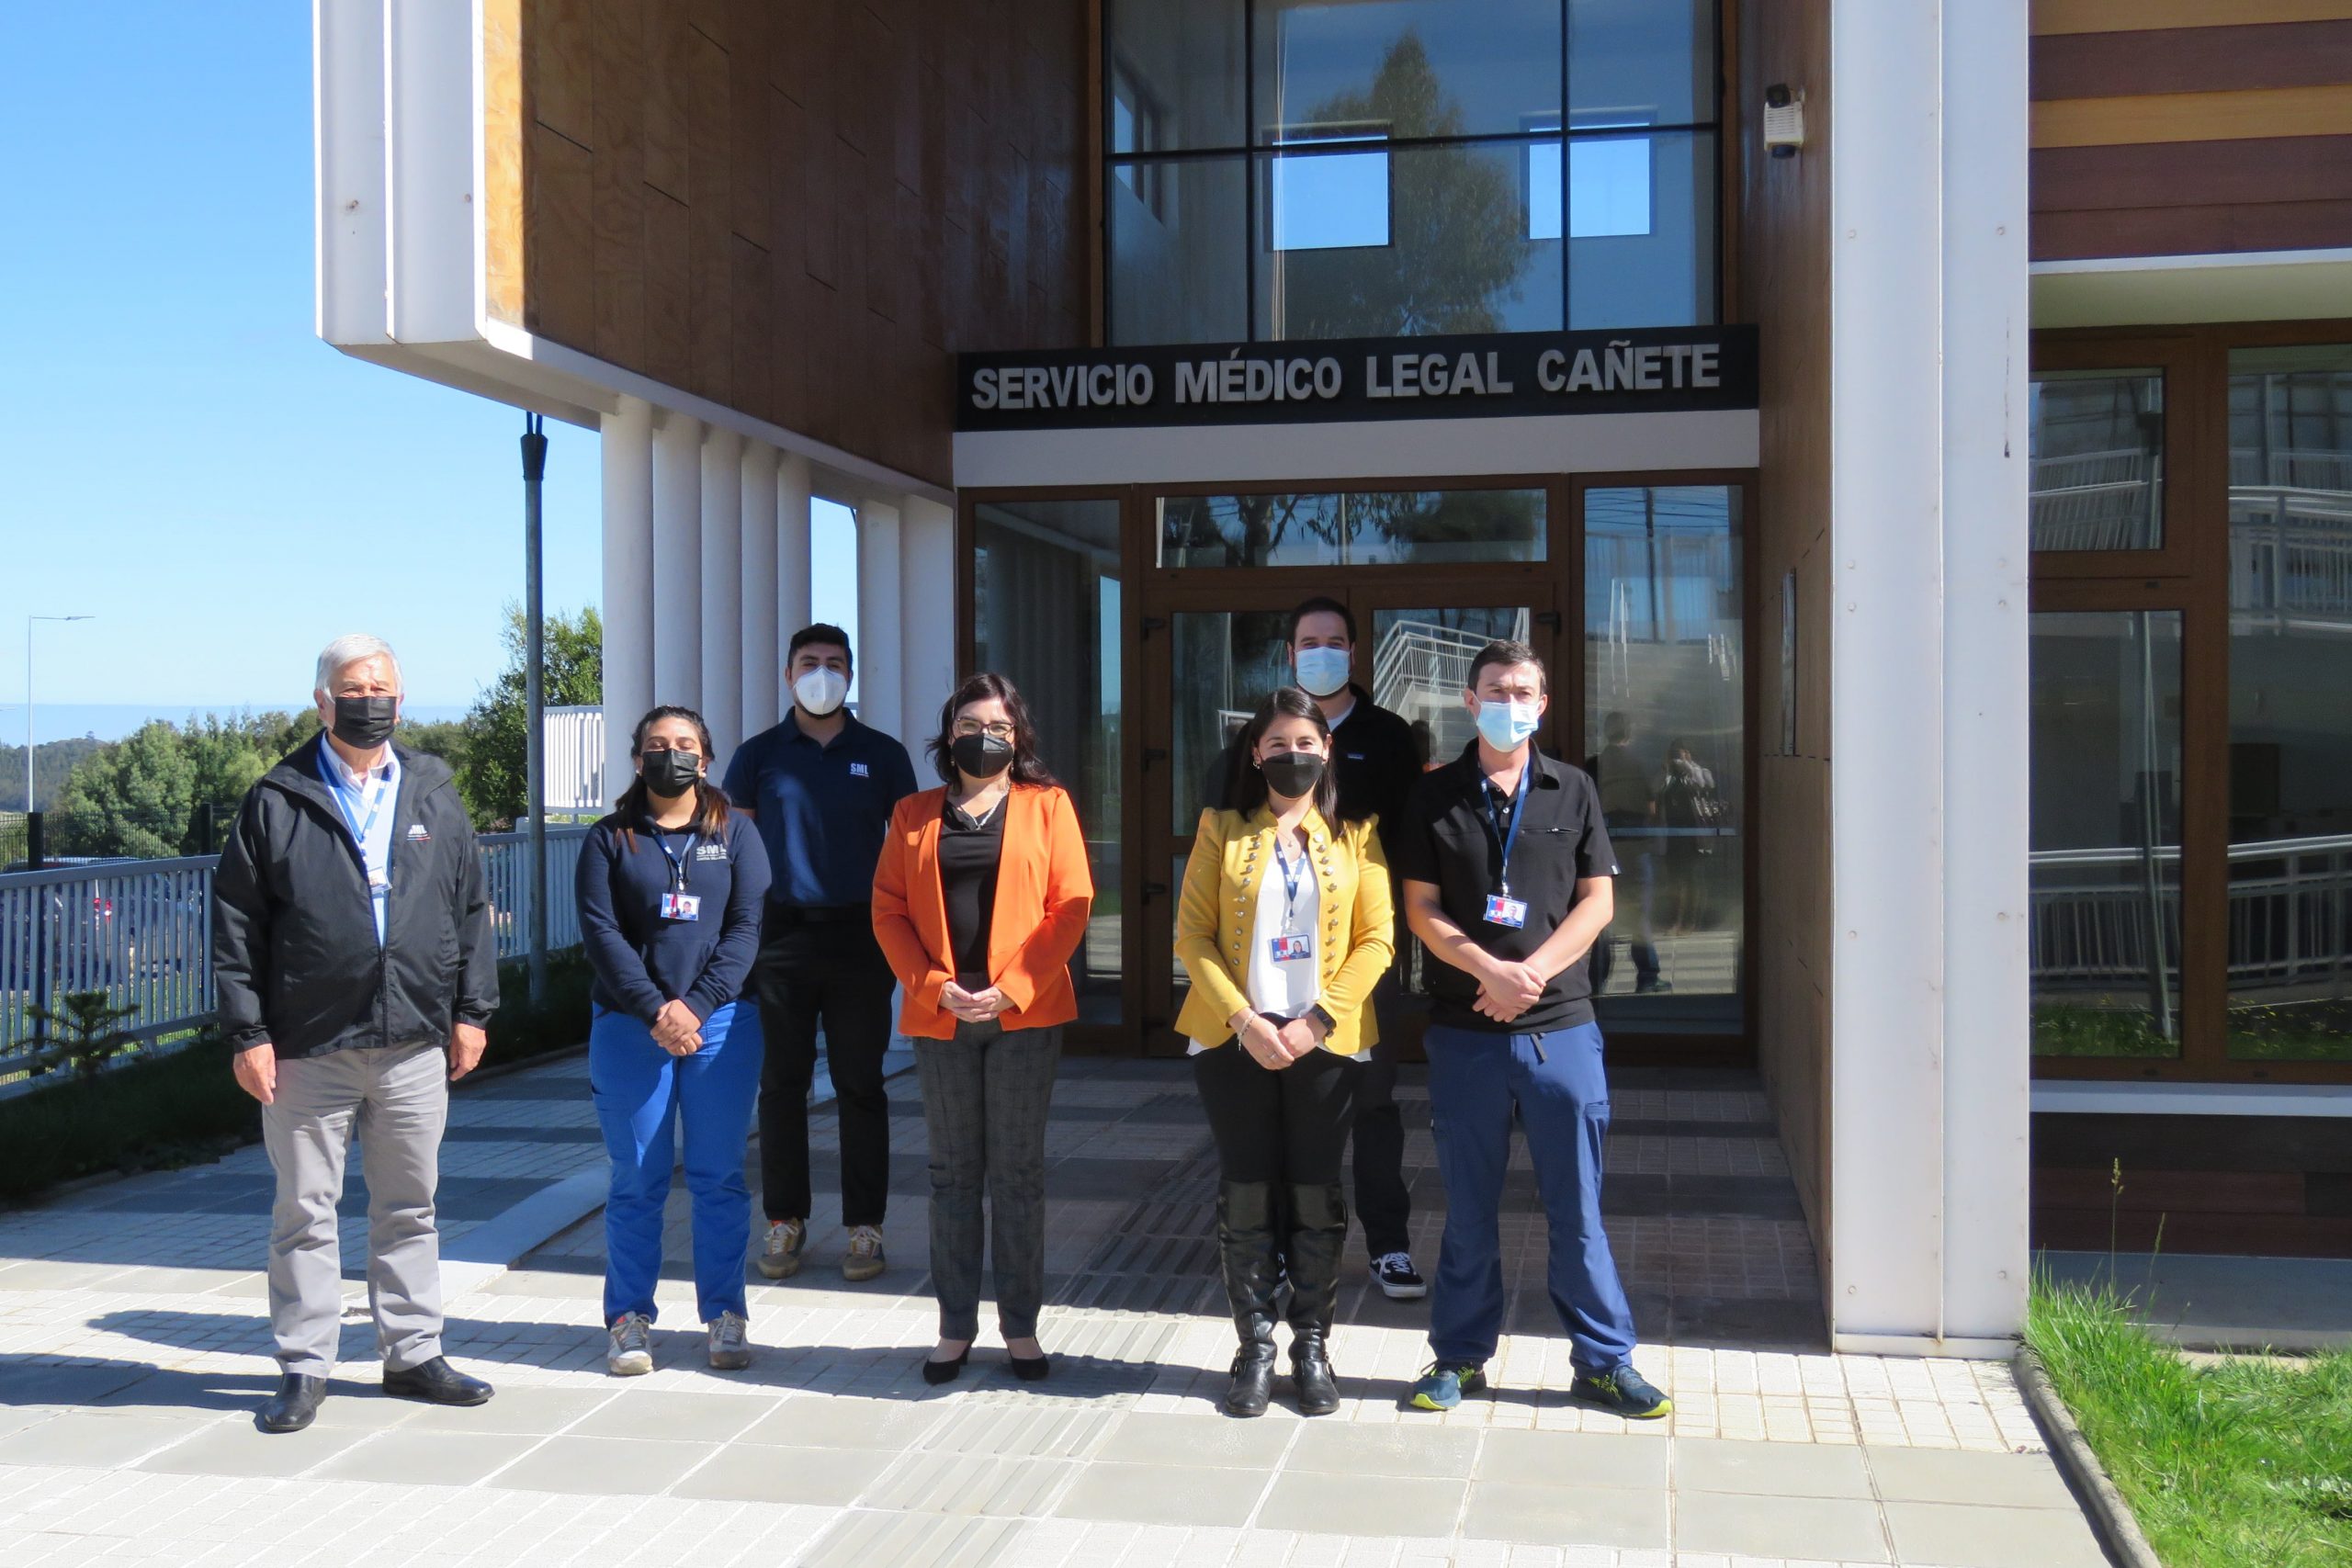  Red forense del SML Biobío se potencia con nueva sede Cañete y mayor equipamiento en Concepción